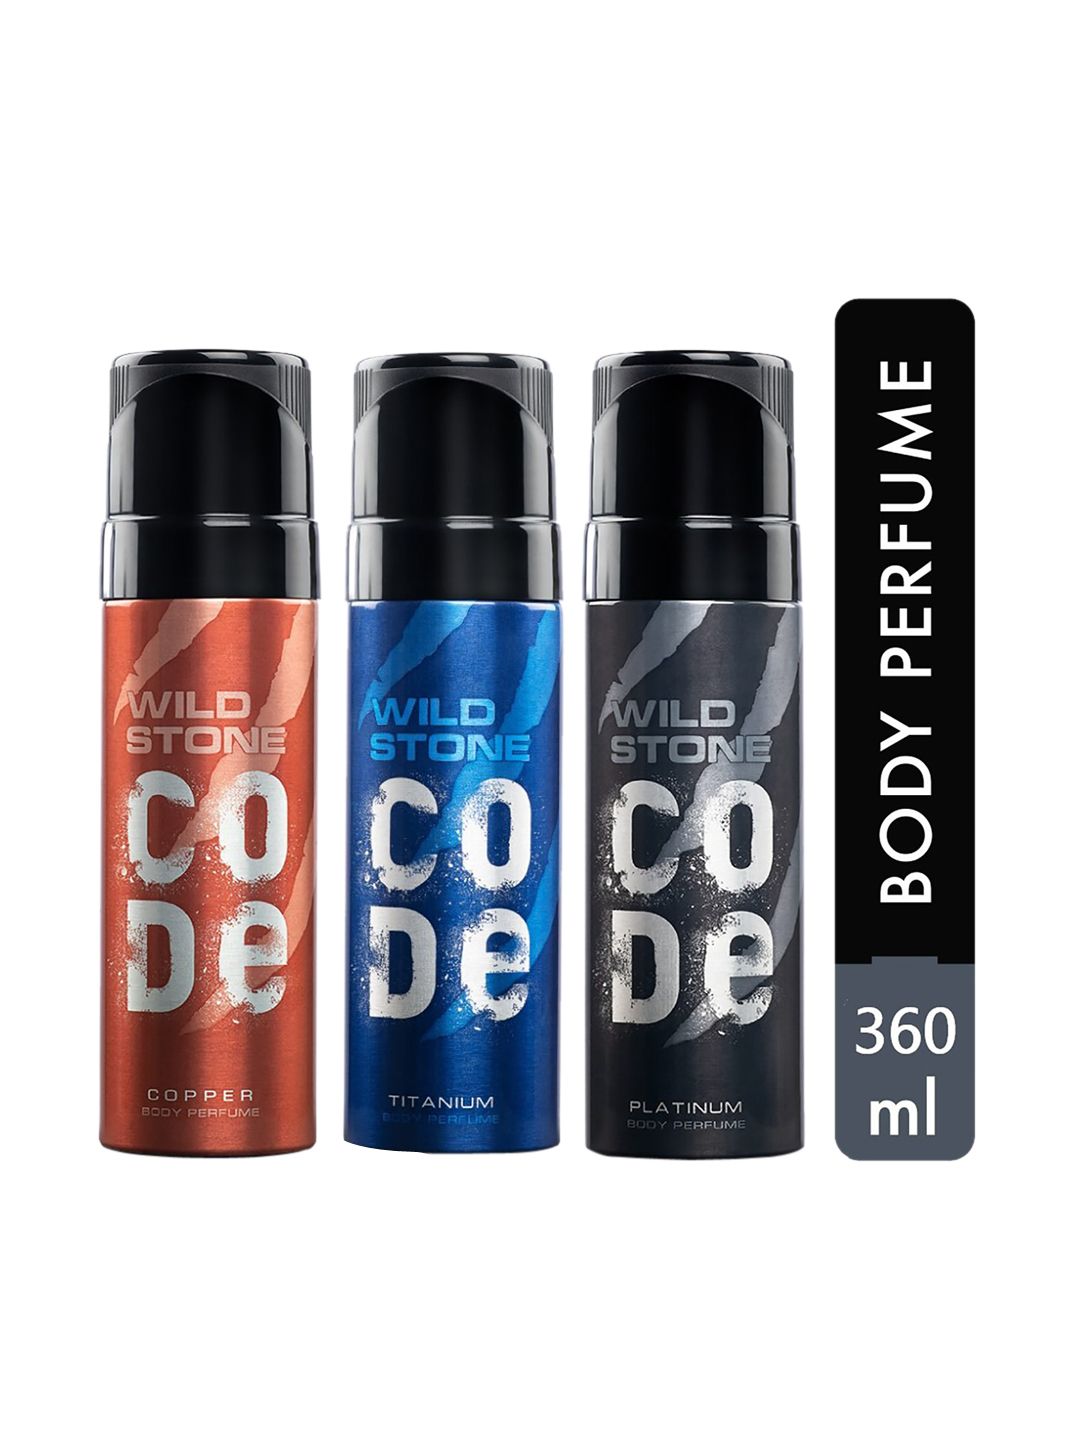 Wild Stone Code Copper, Platinum and Titanium Body Perfume Spray for Men 120ml (Pack of 3) Price in India